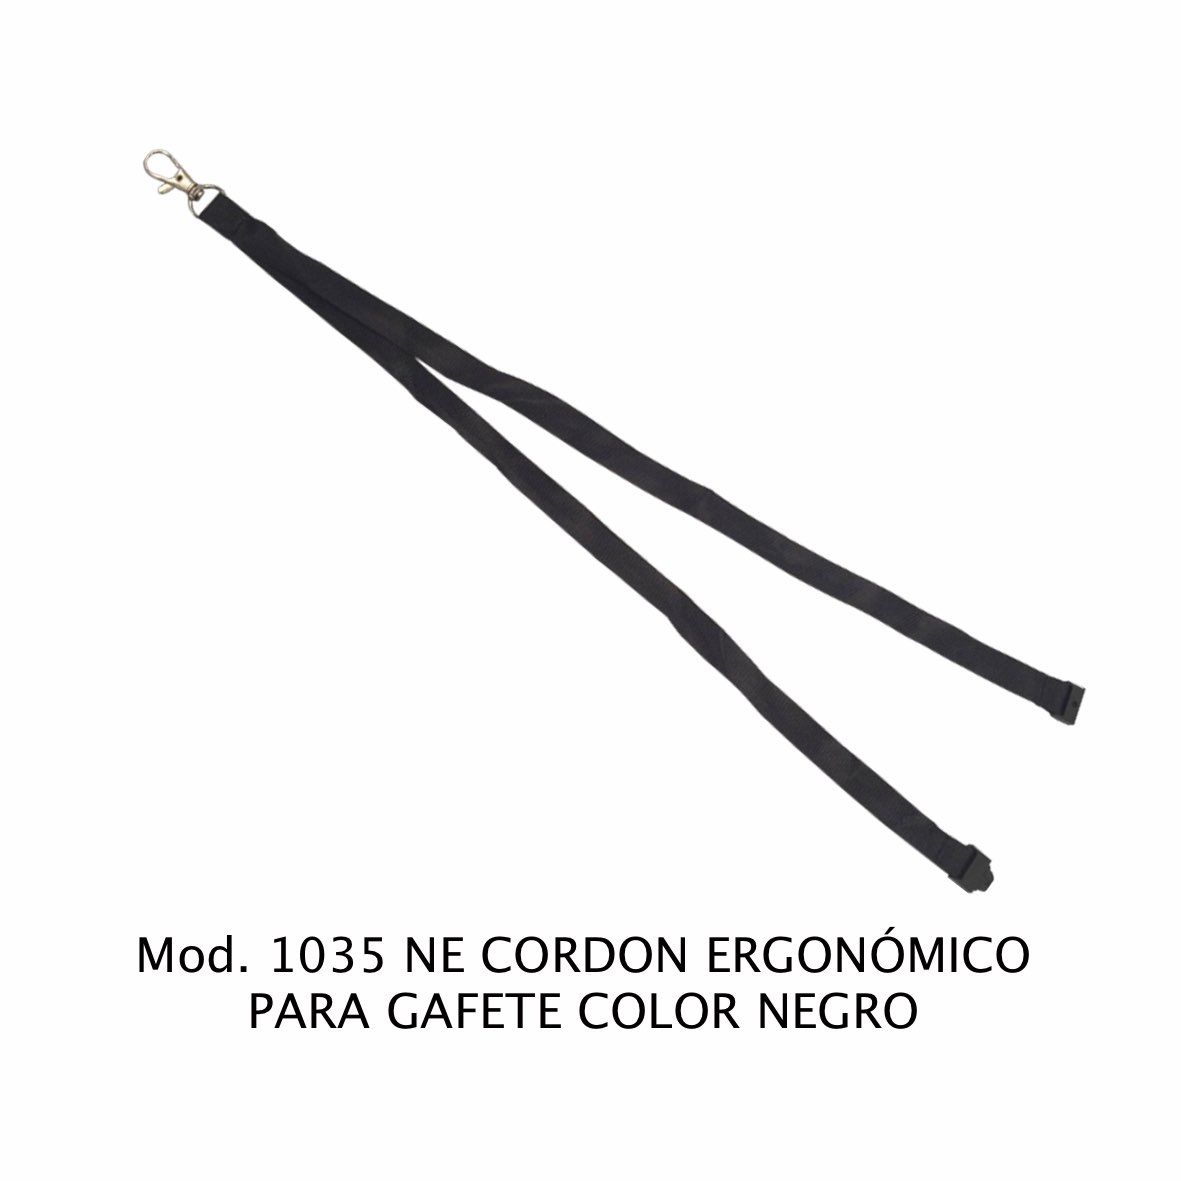 Cordon ergonómico para Gafete Color Negro Modelo 1035 NE - Sablón